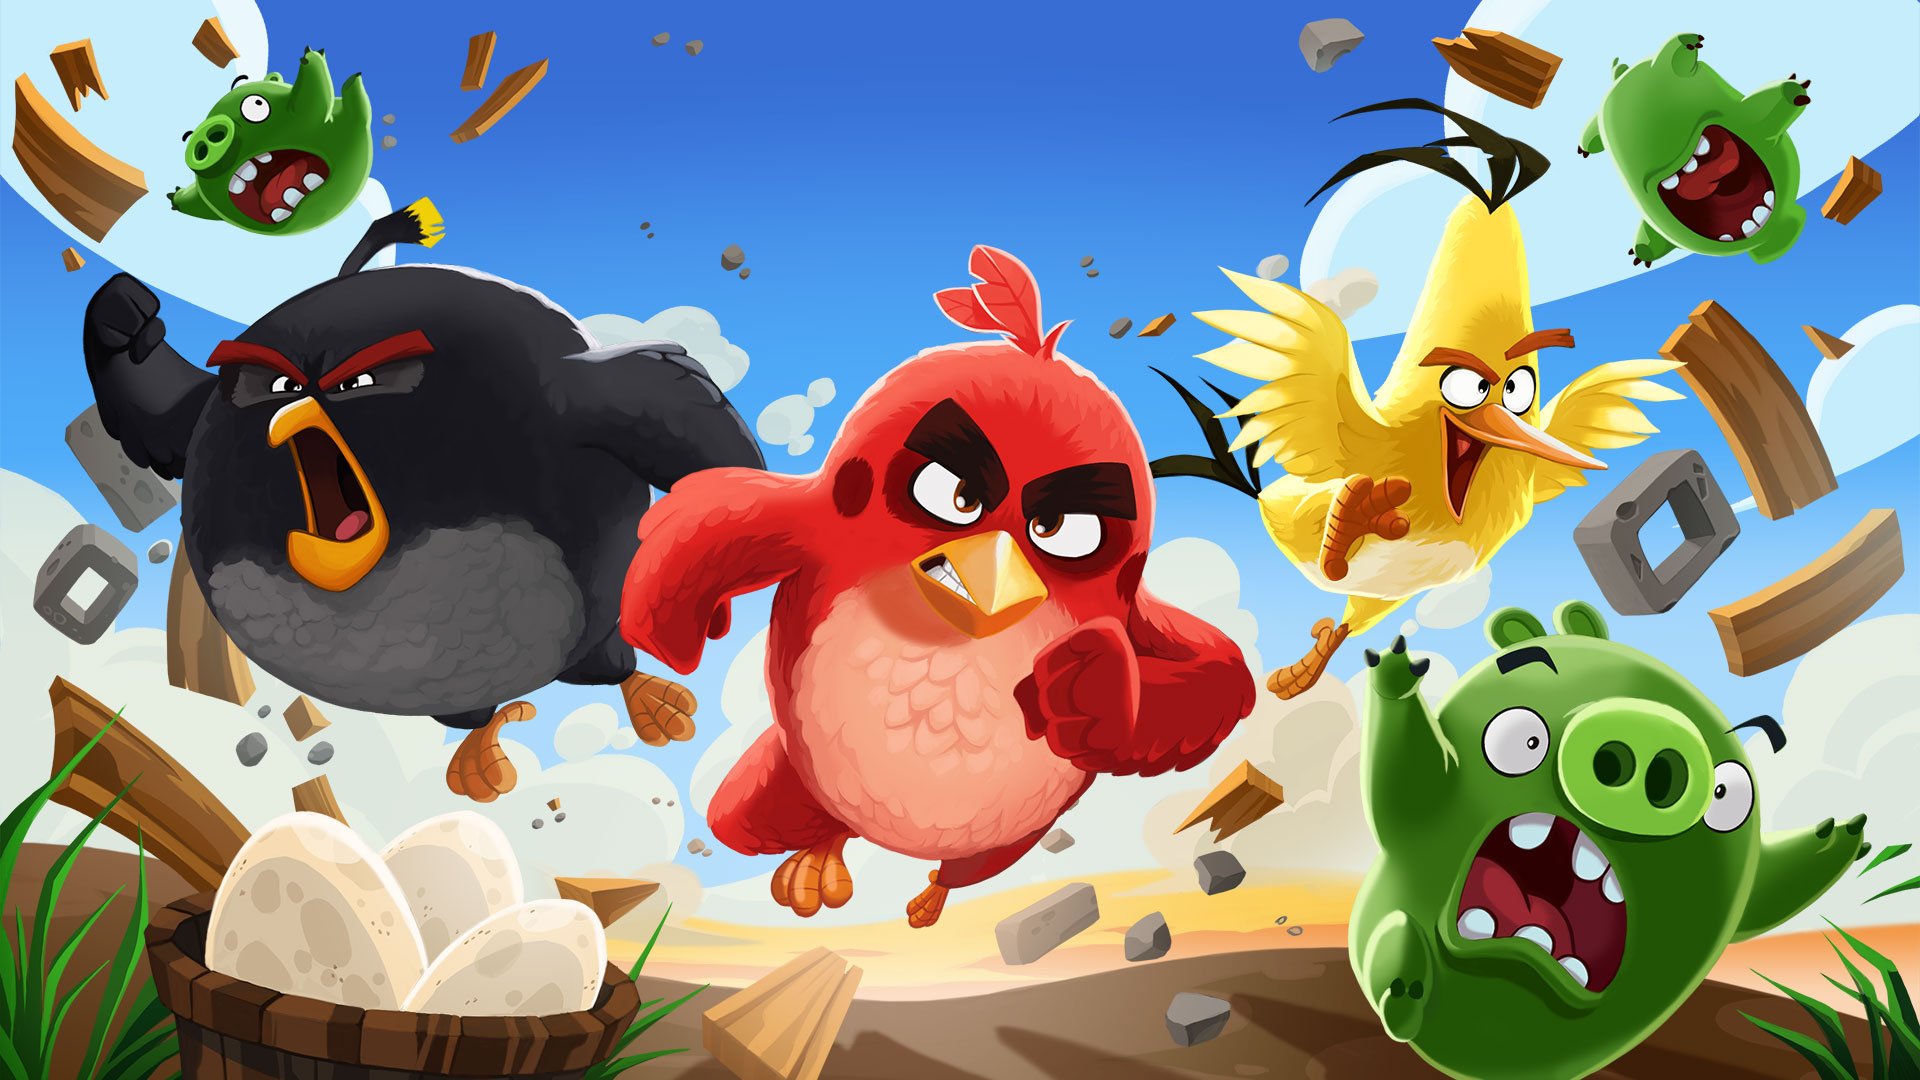 Birds 1 часть. Энгри бердз злые птички. Смешарики и Энгри бердз. Ангрибёрдс злые птенчики. Angry Birds 2 игра птички.